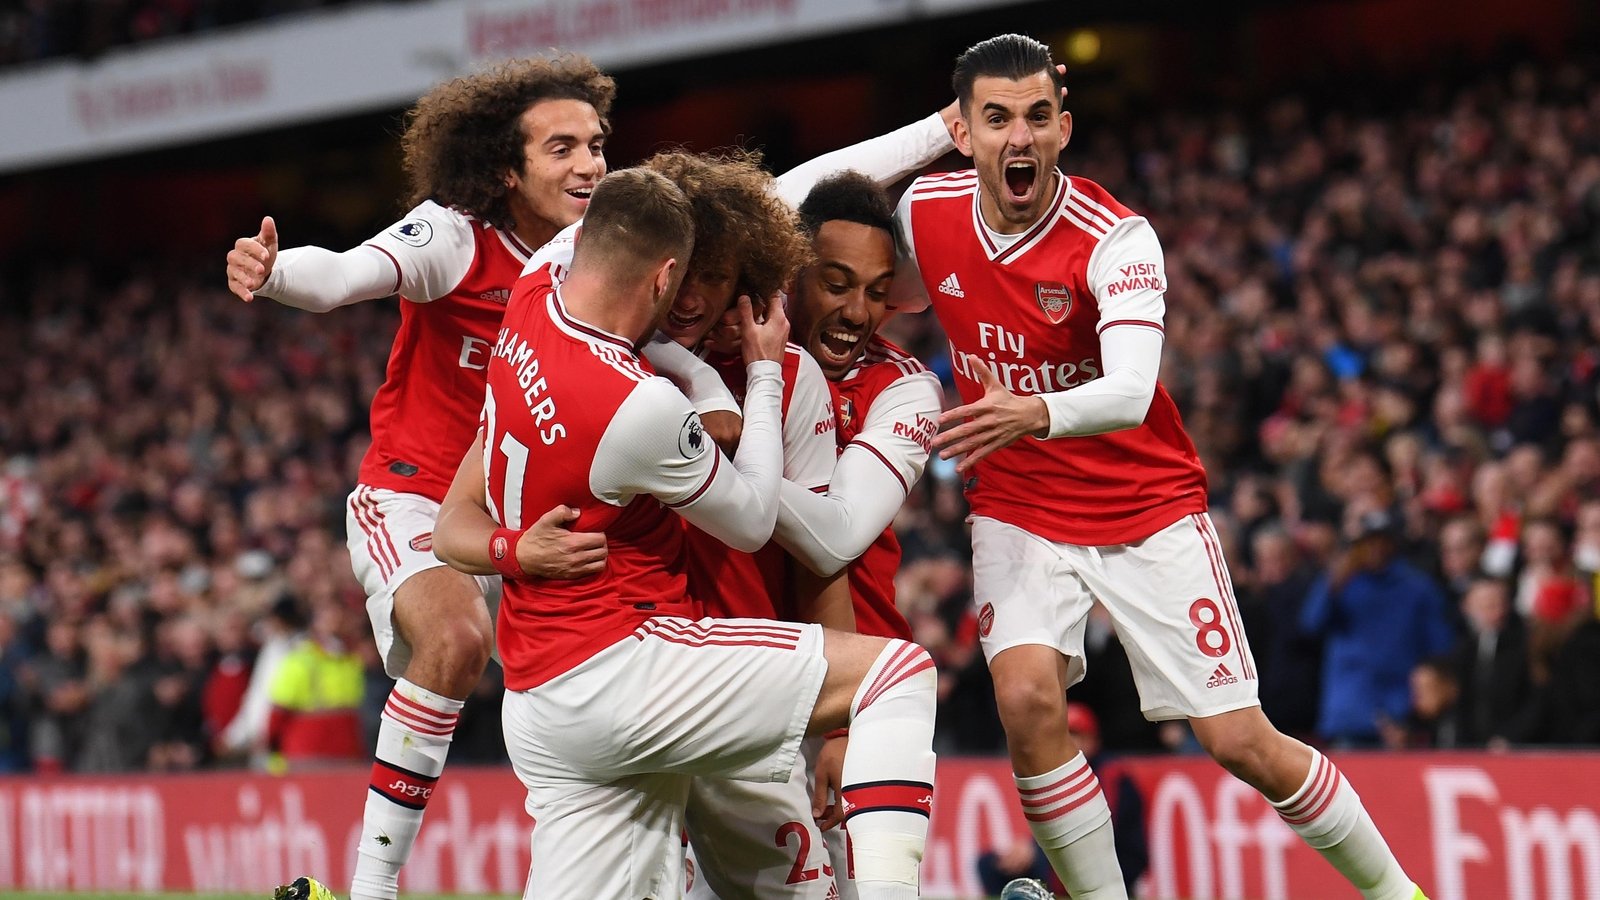 Arsenal v Southampton preview: goals, stats, more | Pre-Match Report | News | Arsenal.com